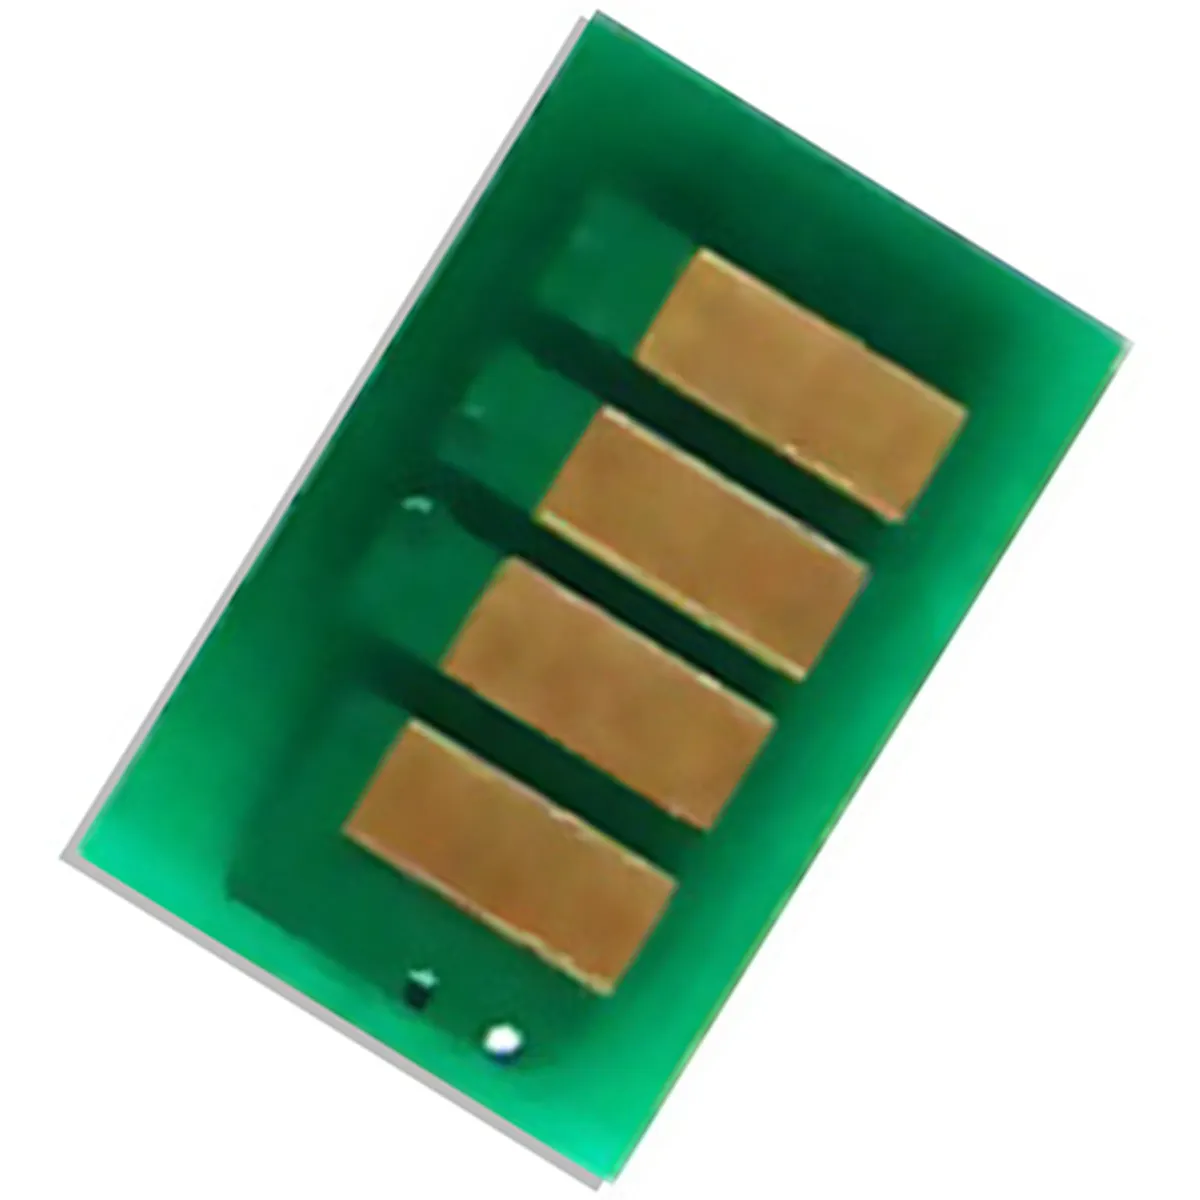 El chip de tóner compatible para la serie de impresoras Ricoh Aficio / Imagio MP C6000 / C6500 / 6100D / 6600